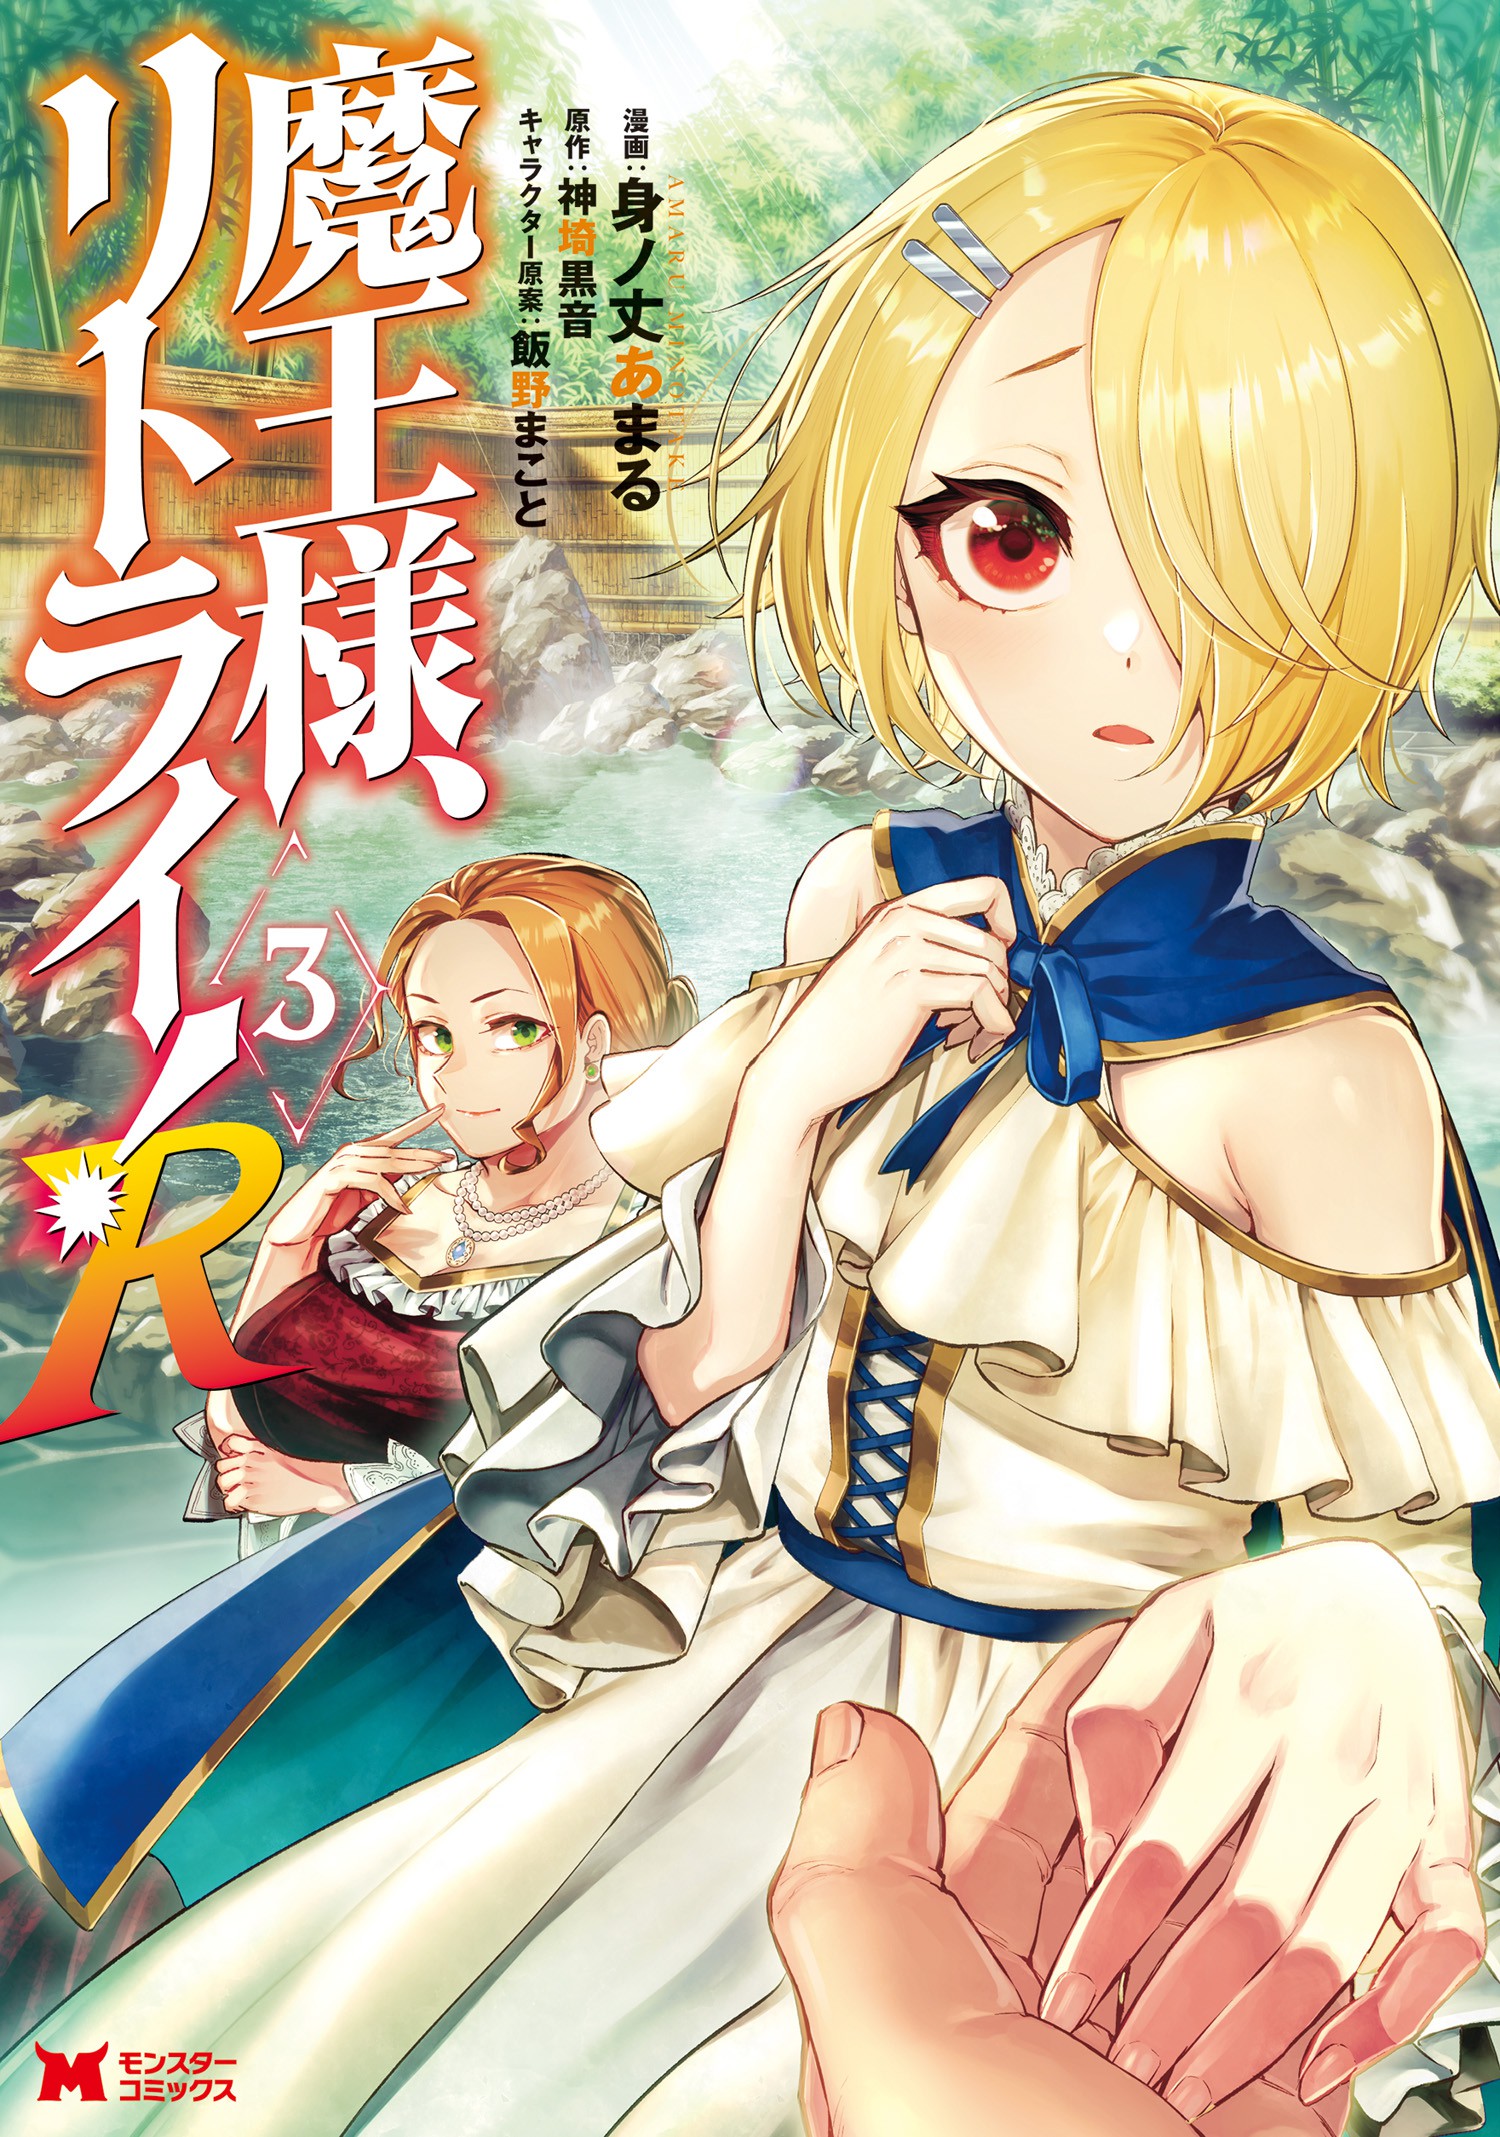 Read Maou-Sama, Retry! R Manga on Mangakakalot